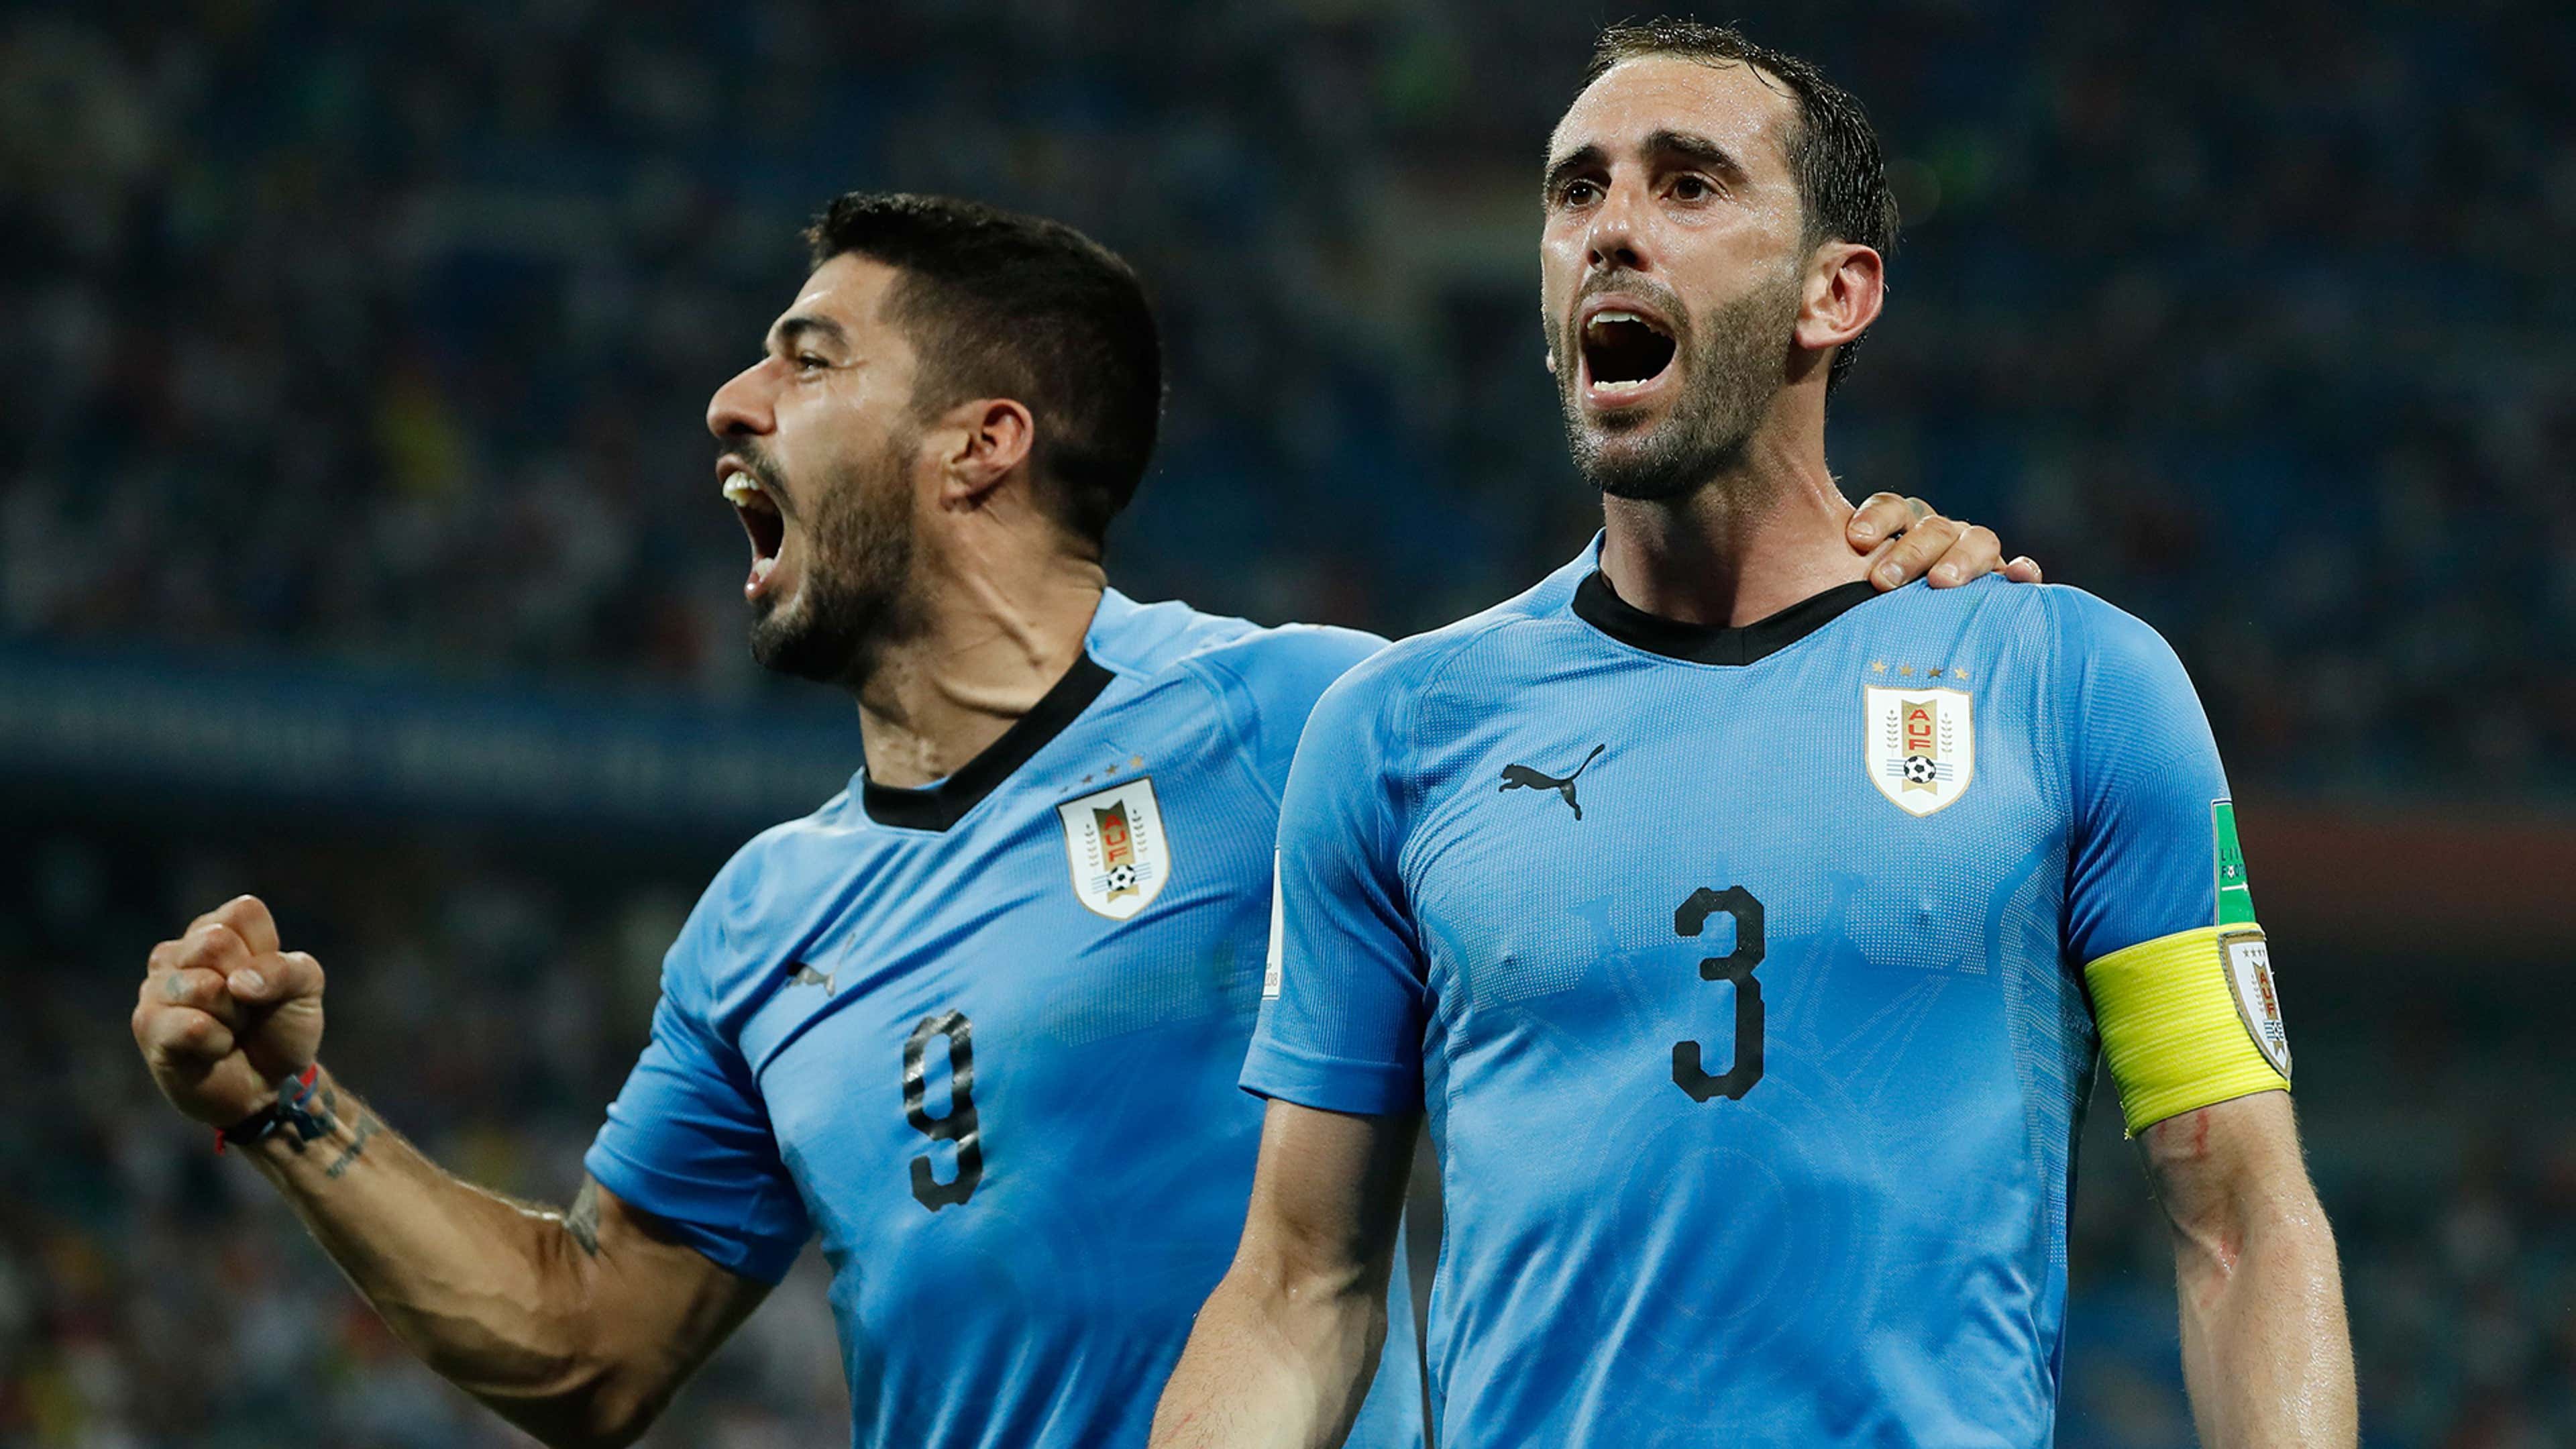 Reino Unido pasa a Cuartos de fútbol olímpico y elimina a Uruguay